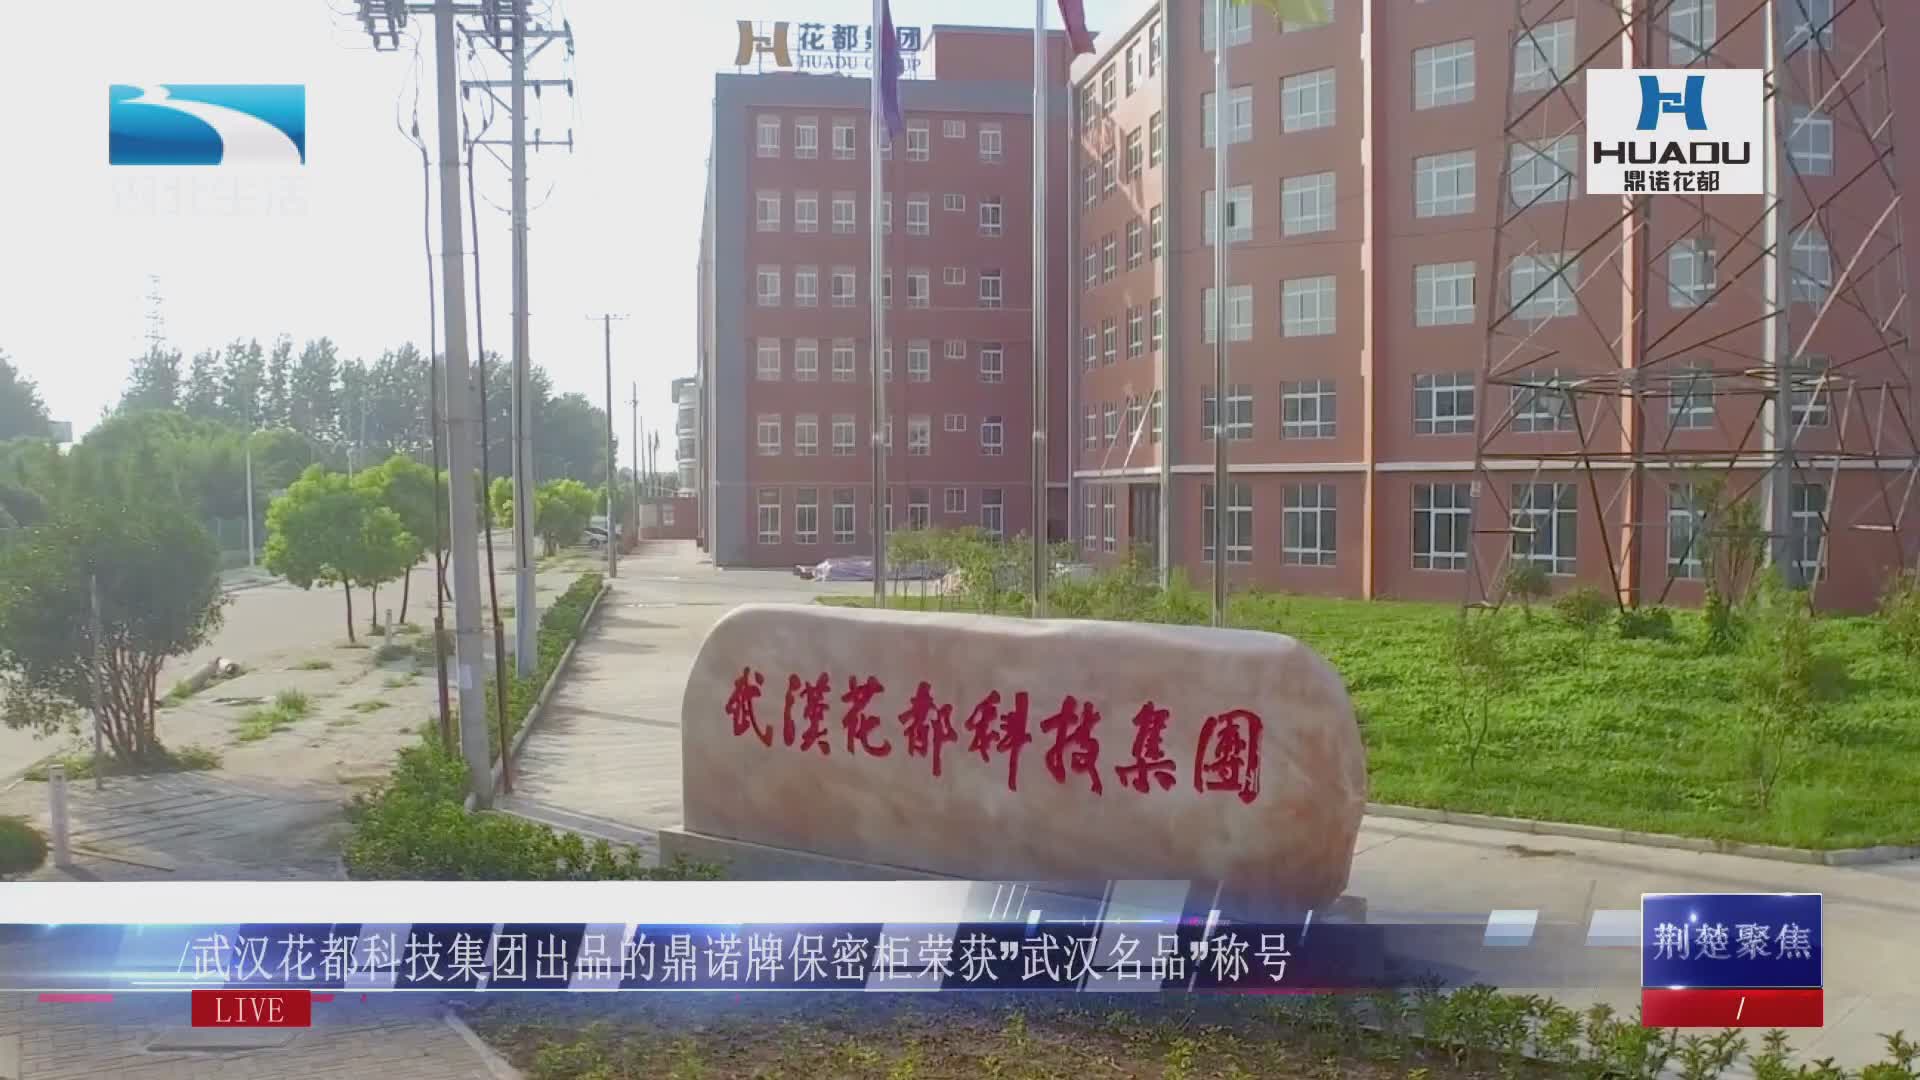  湖北电视台报道武汉花都荣获“武汉名品”称号 